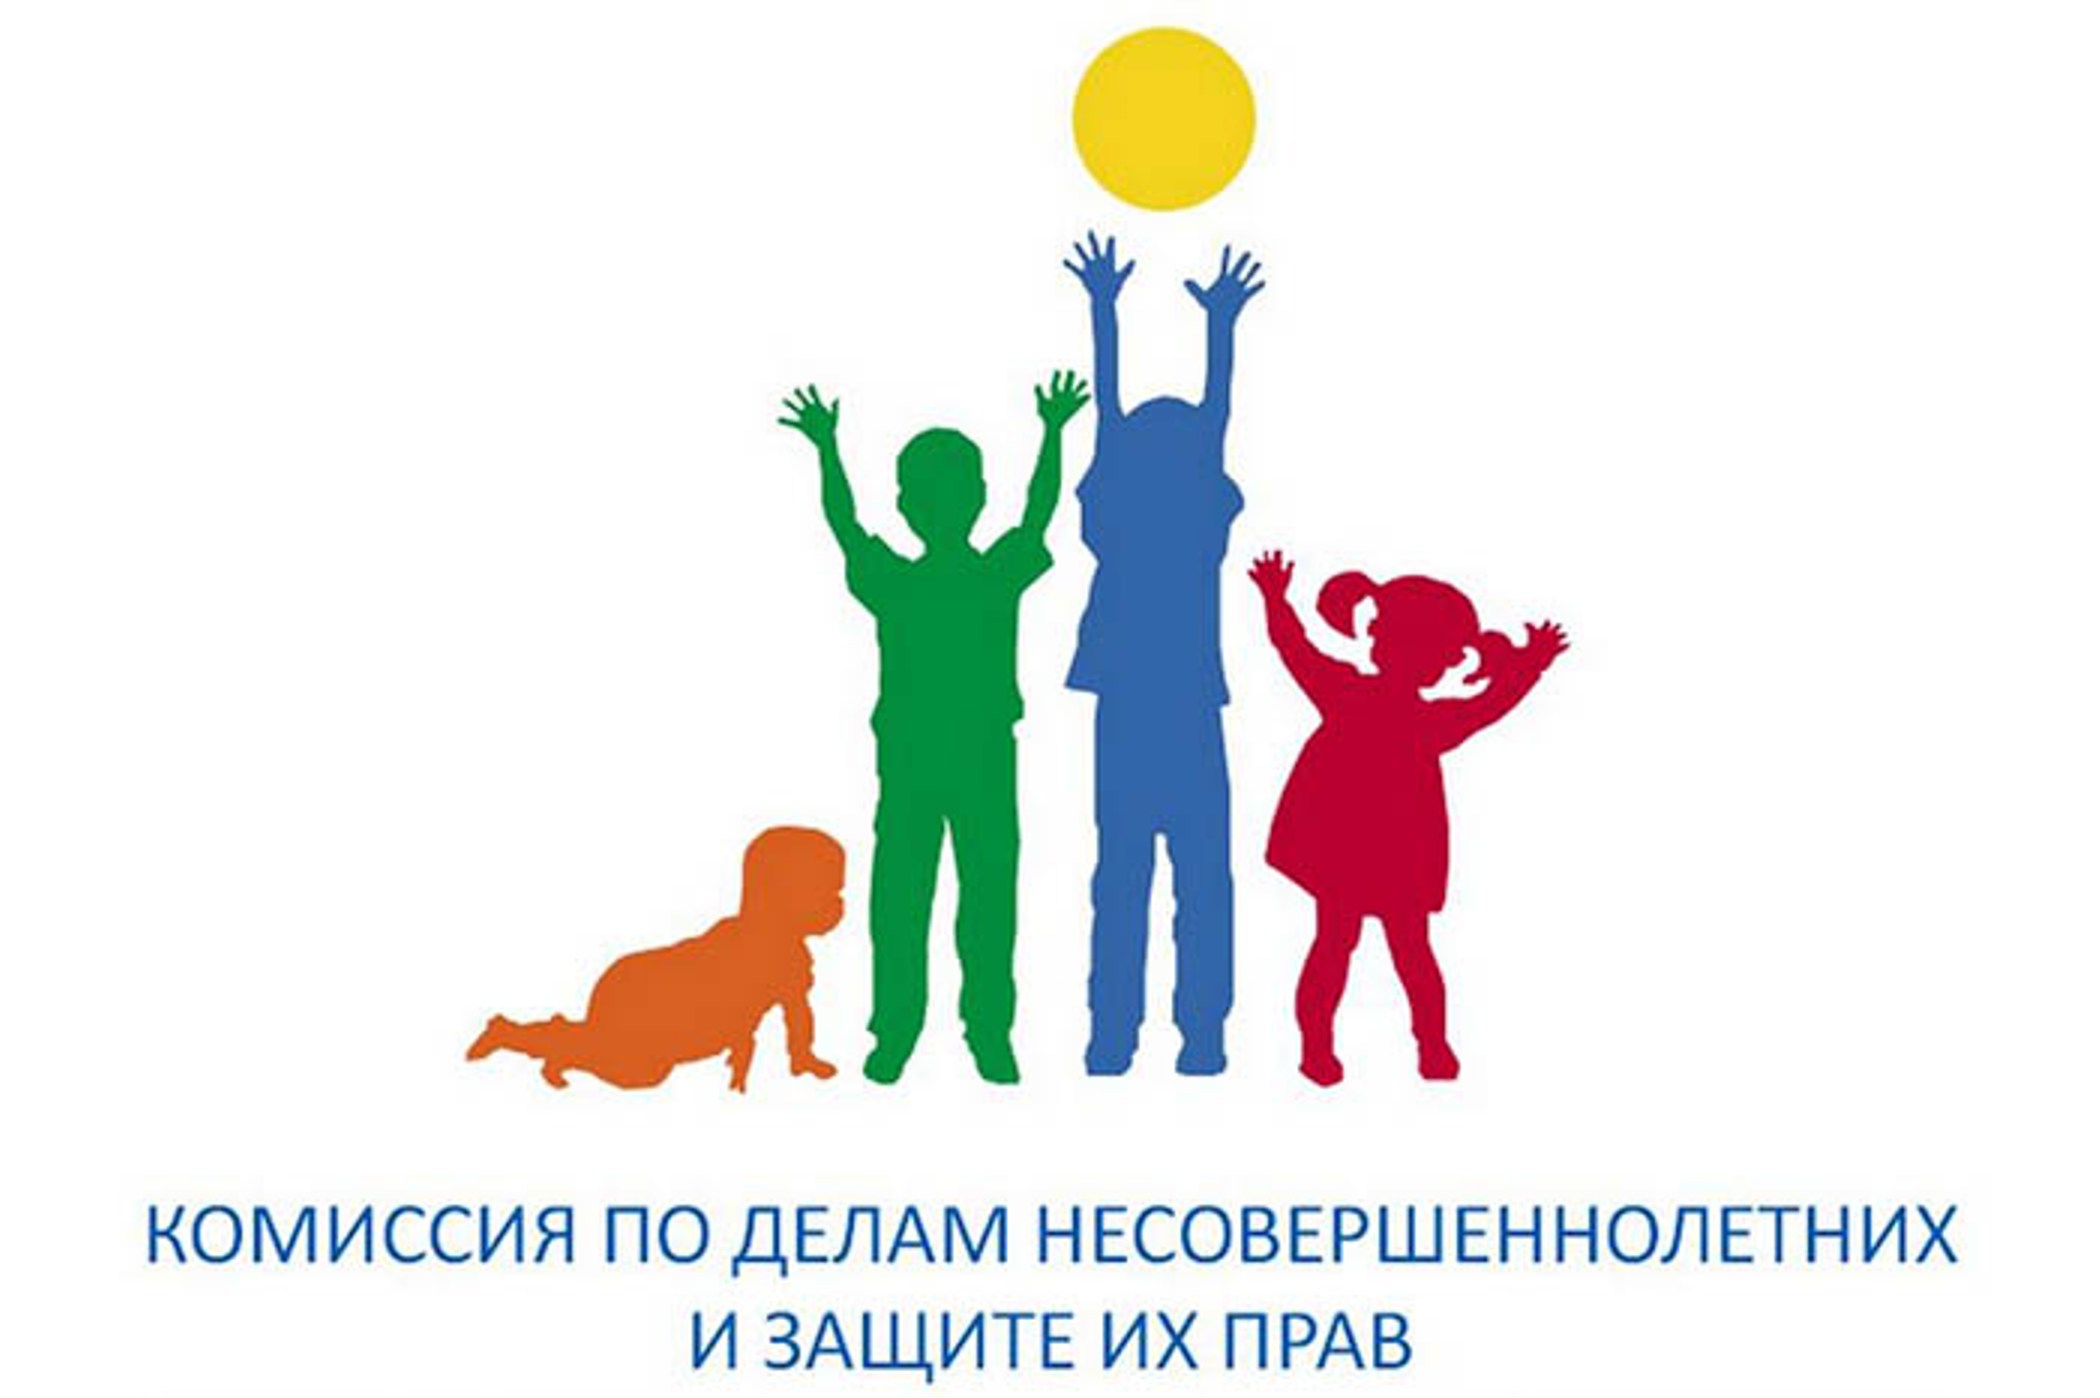 Состоялось очередное заседание комиссии по делам несовершеннолетних по Фрунзенскому району.